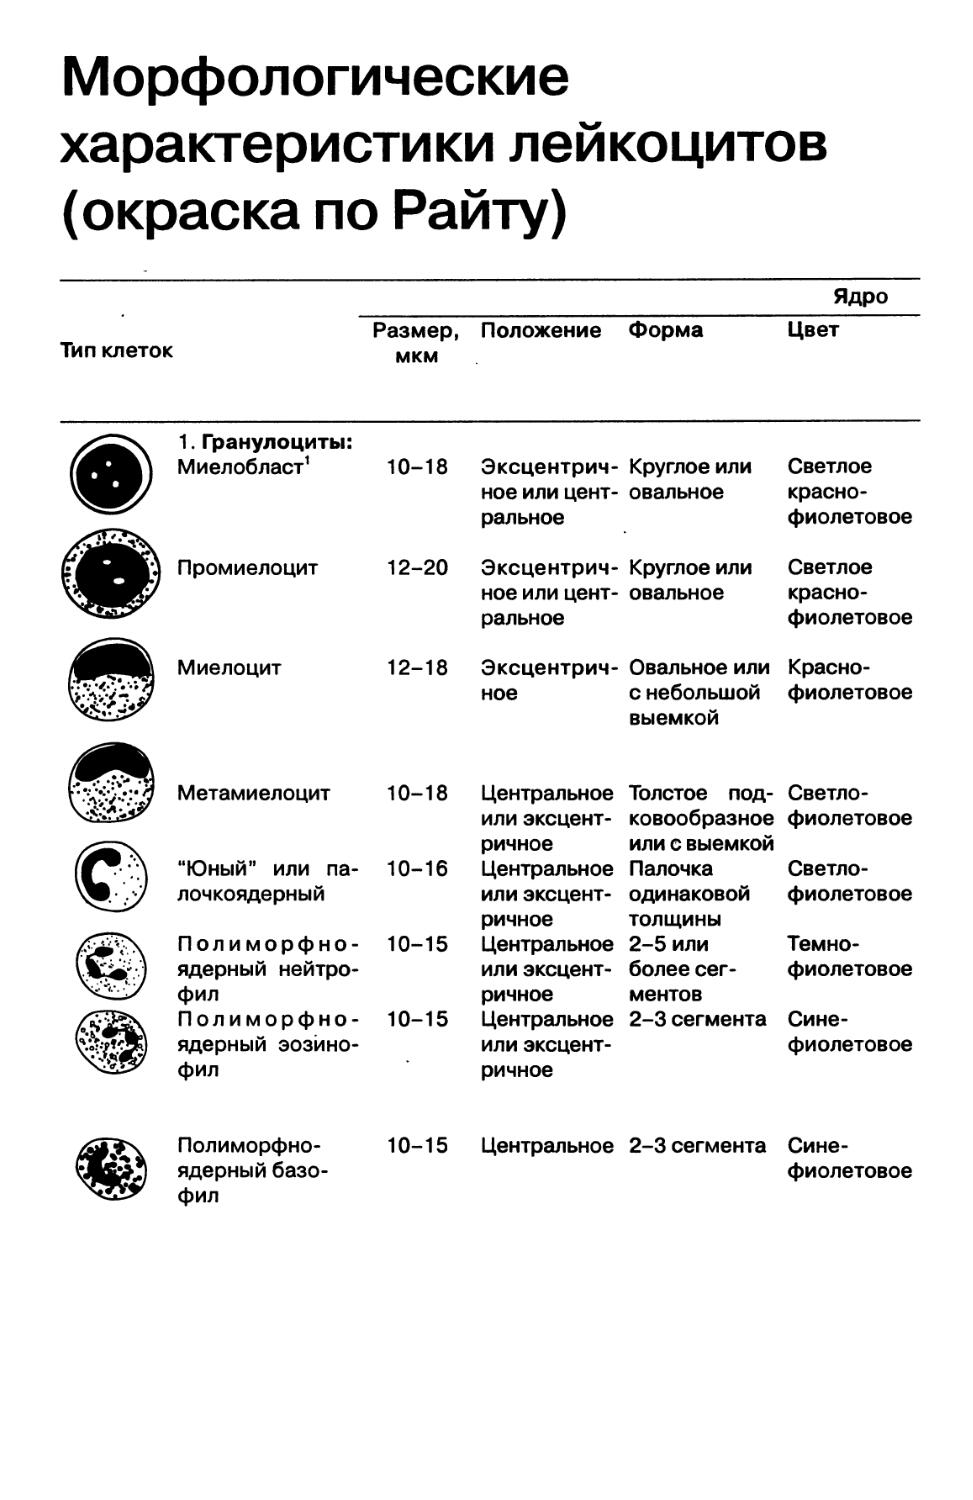 Приложение 4. Морфологические характеристики лейкоцитов